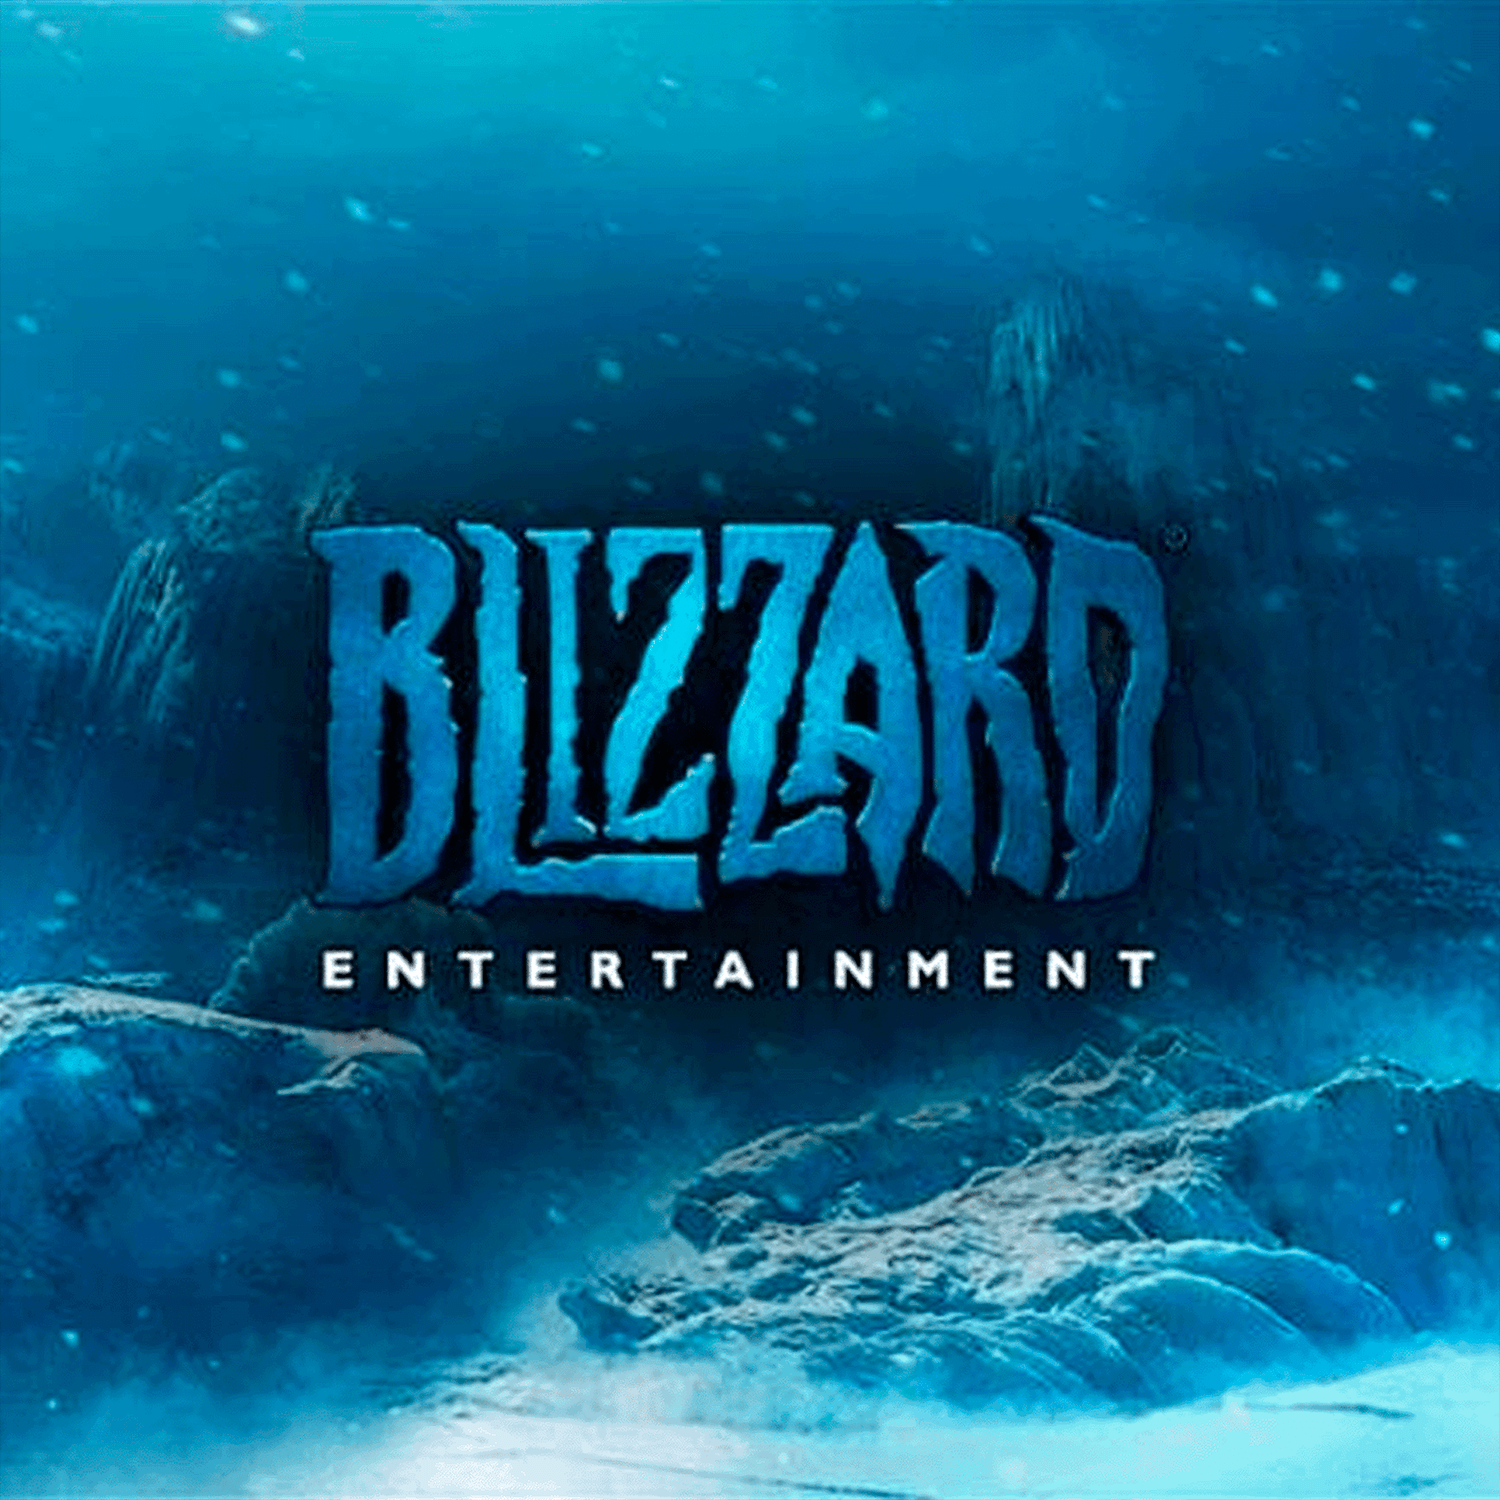 ¡Ex jefe de Blizzard quiere que al final de los juegos se pueda dar propina a los desarrolladores!